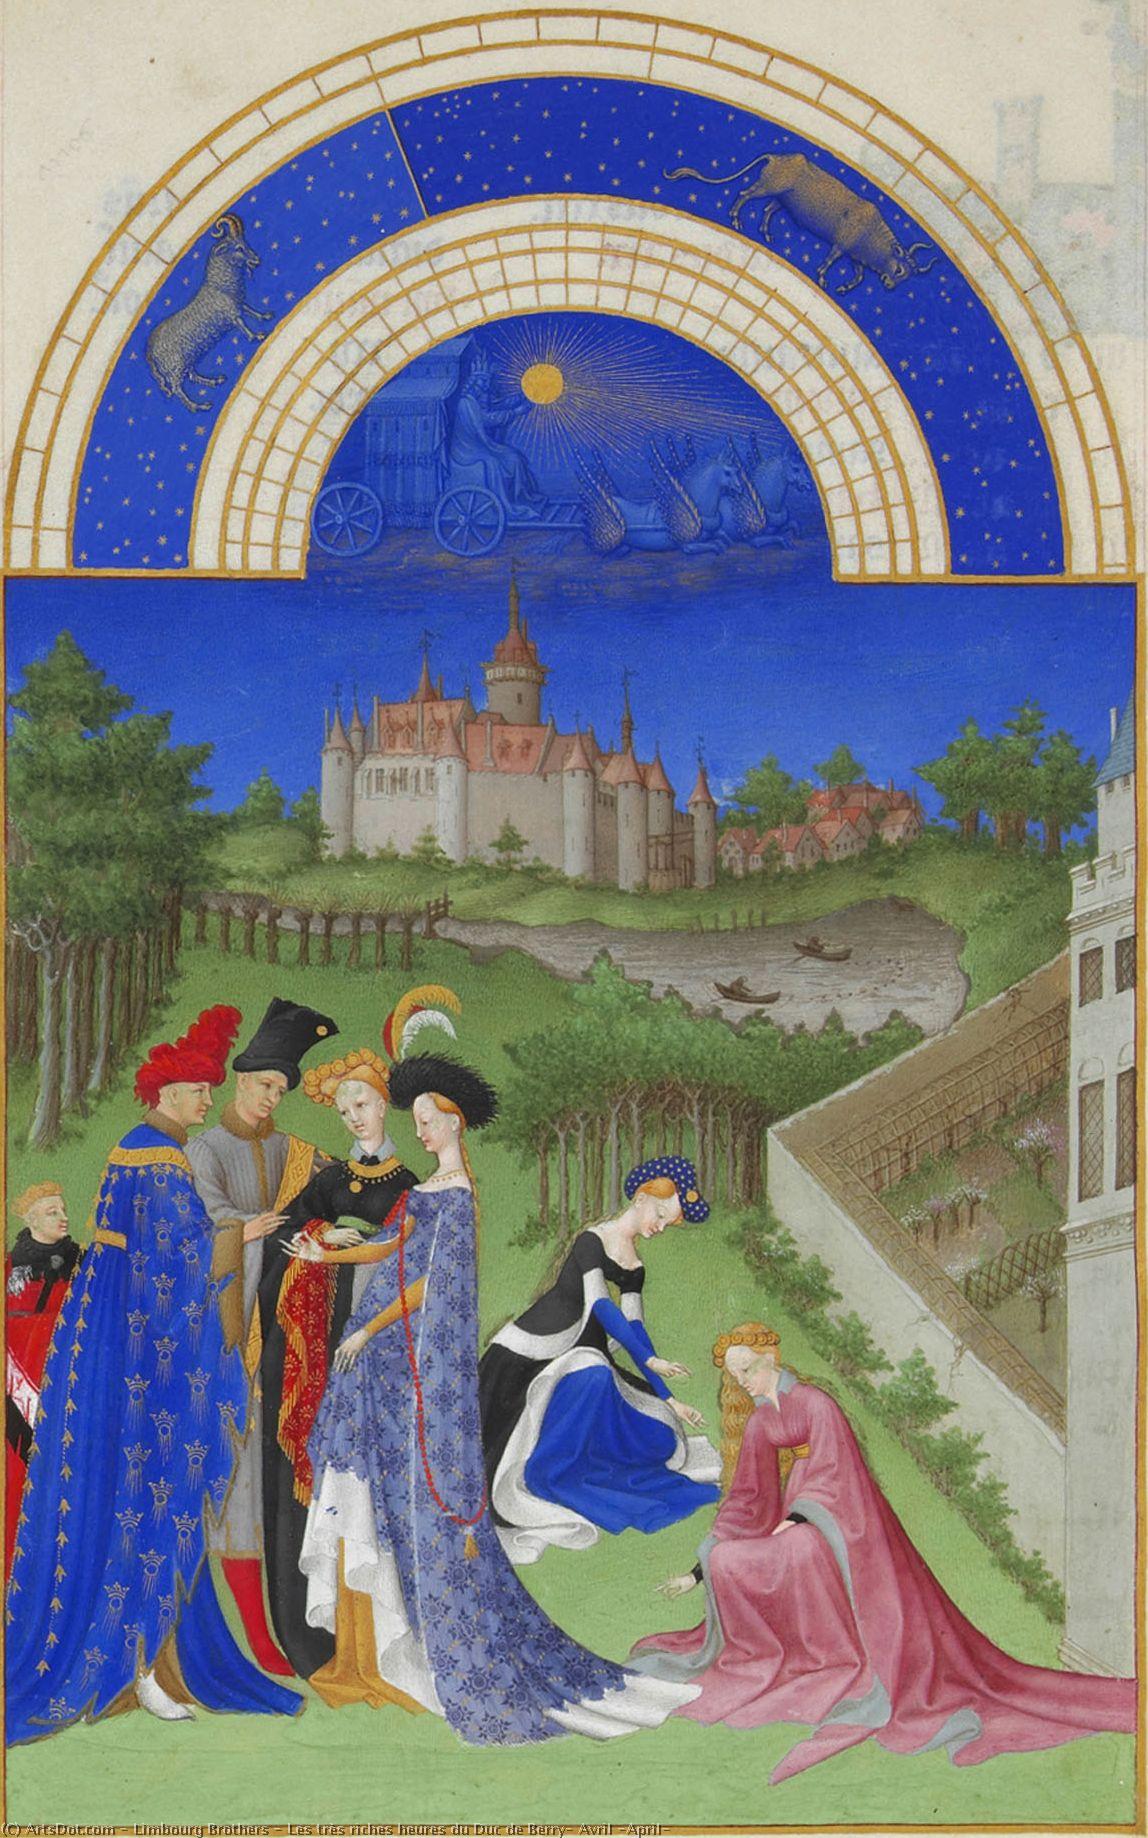 WikiOO.org - אנציקלופדיה לאמנויות יפות - ציור, יצירות אמנות Limbourg Brothers - Les très riches heures du Duc de Berry: Avril (April)